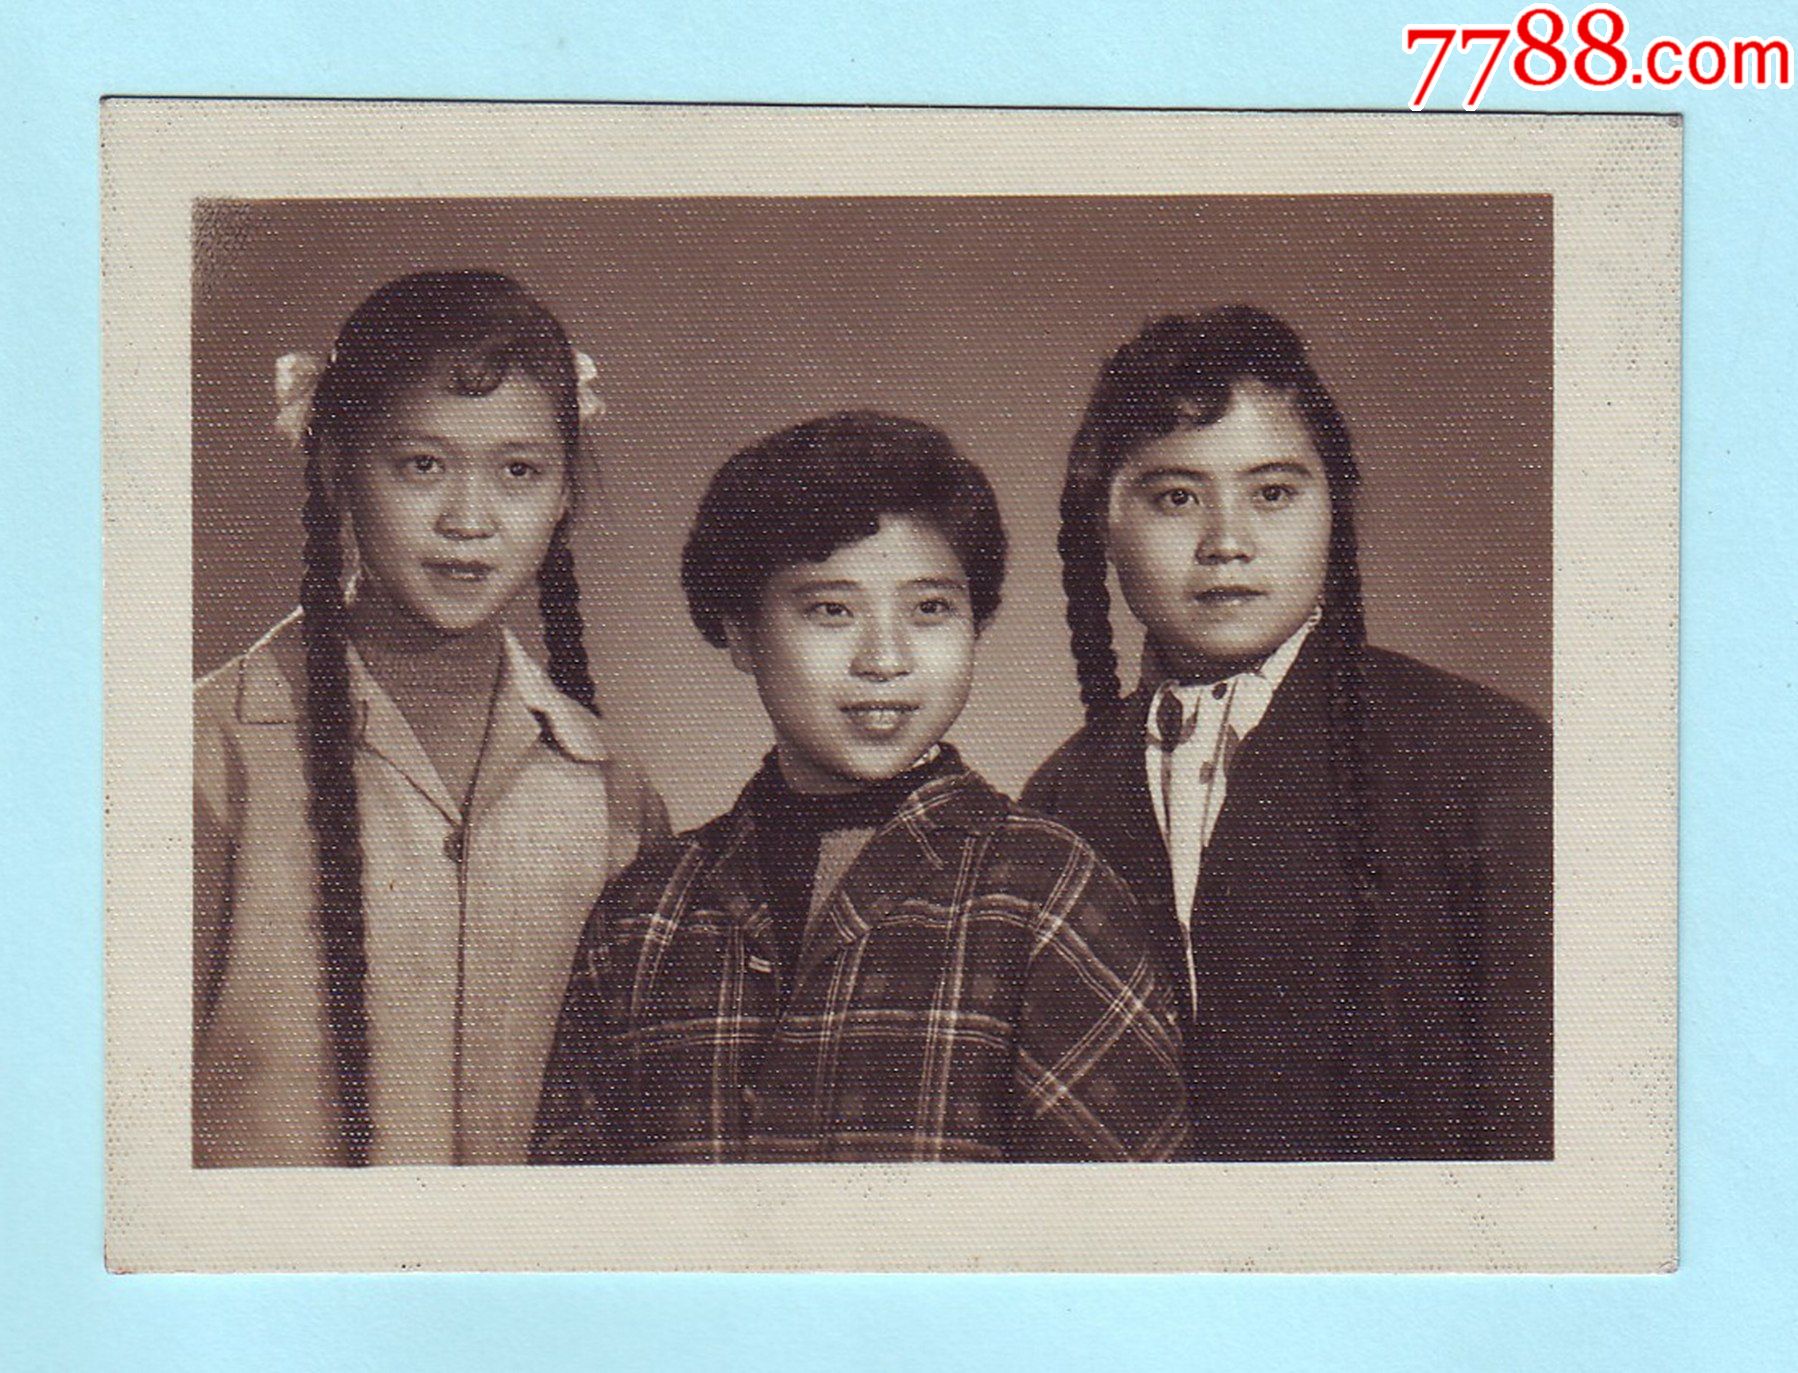 早期美女三姐妹合影黑白照片,两个长辫子,一个短头发,高清像片